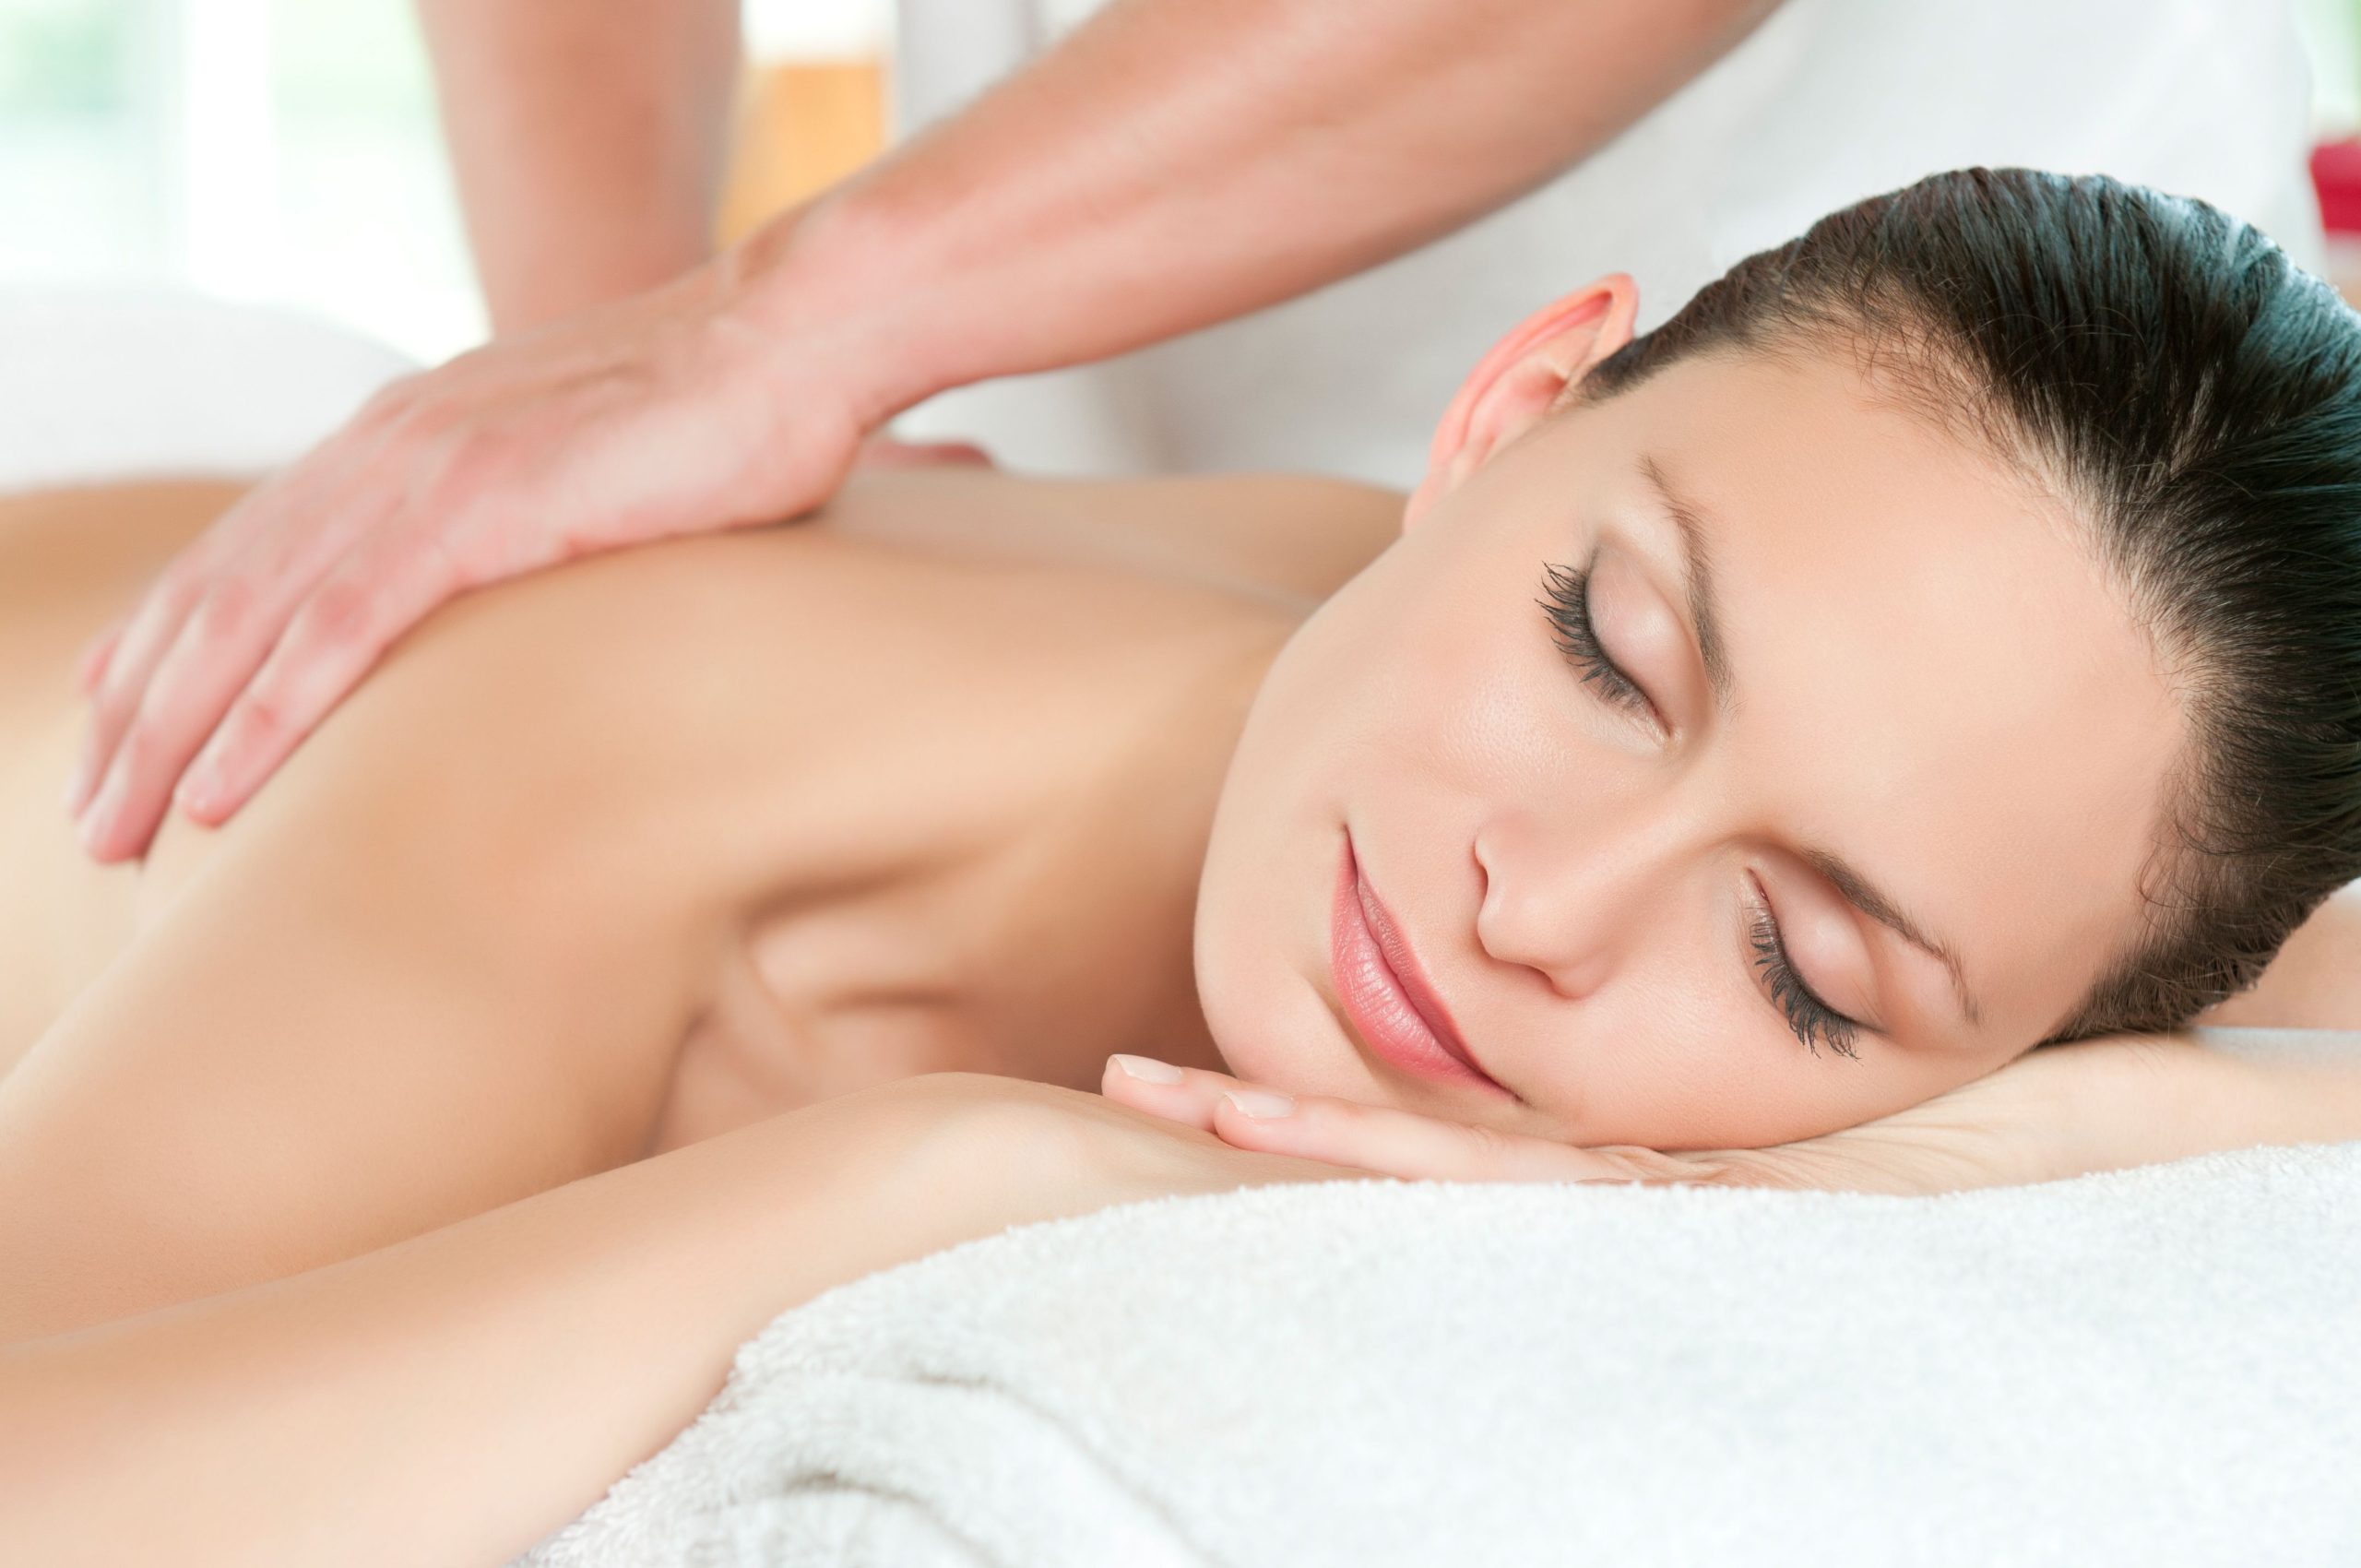 Relaxation Massage Therapist Near Maltby, WA